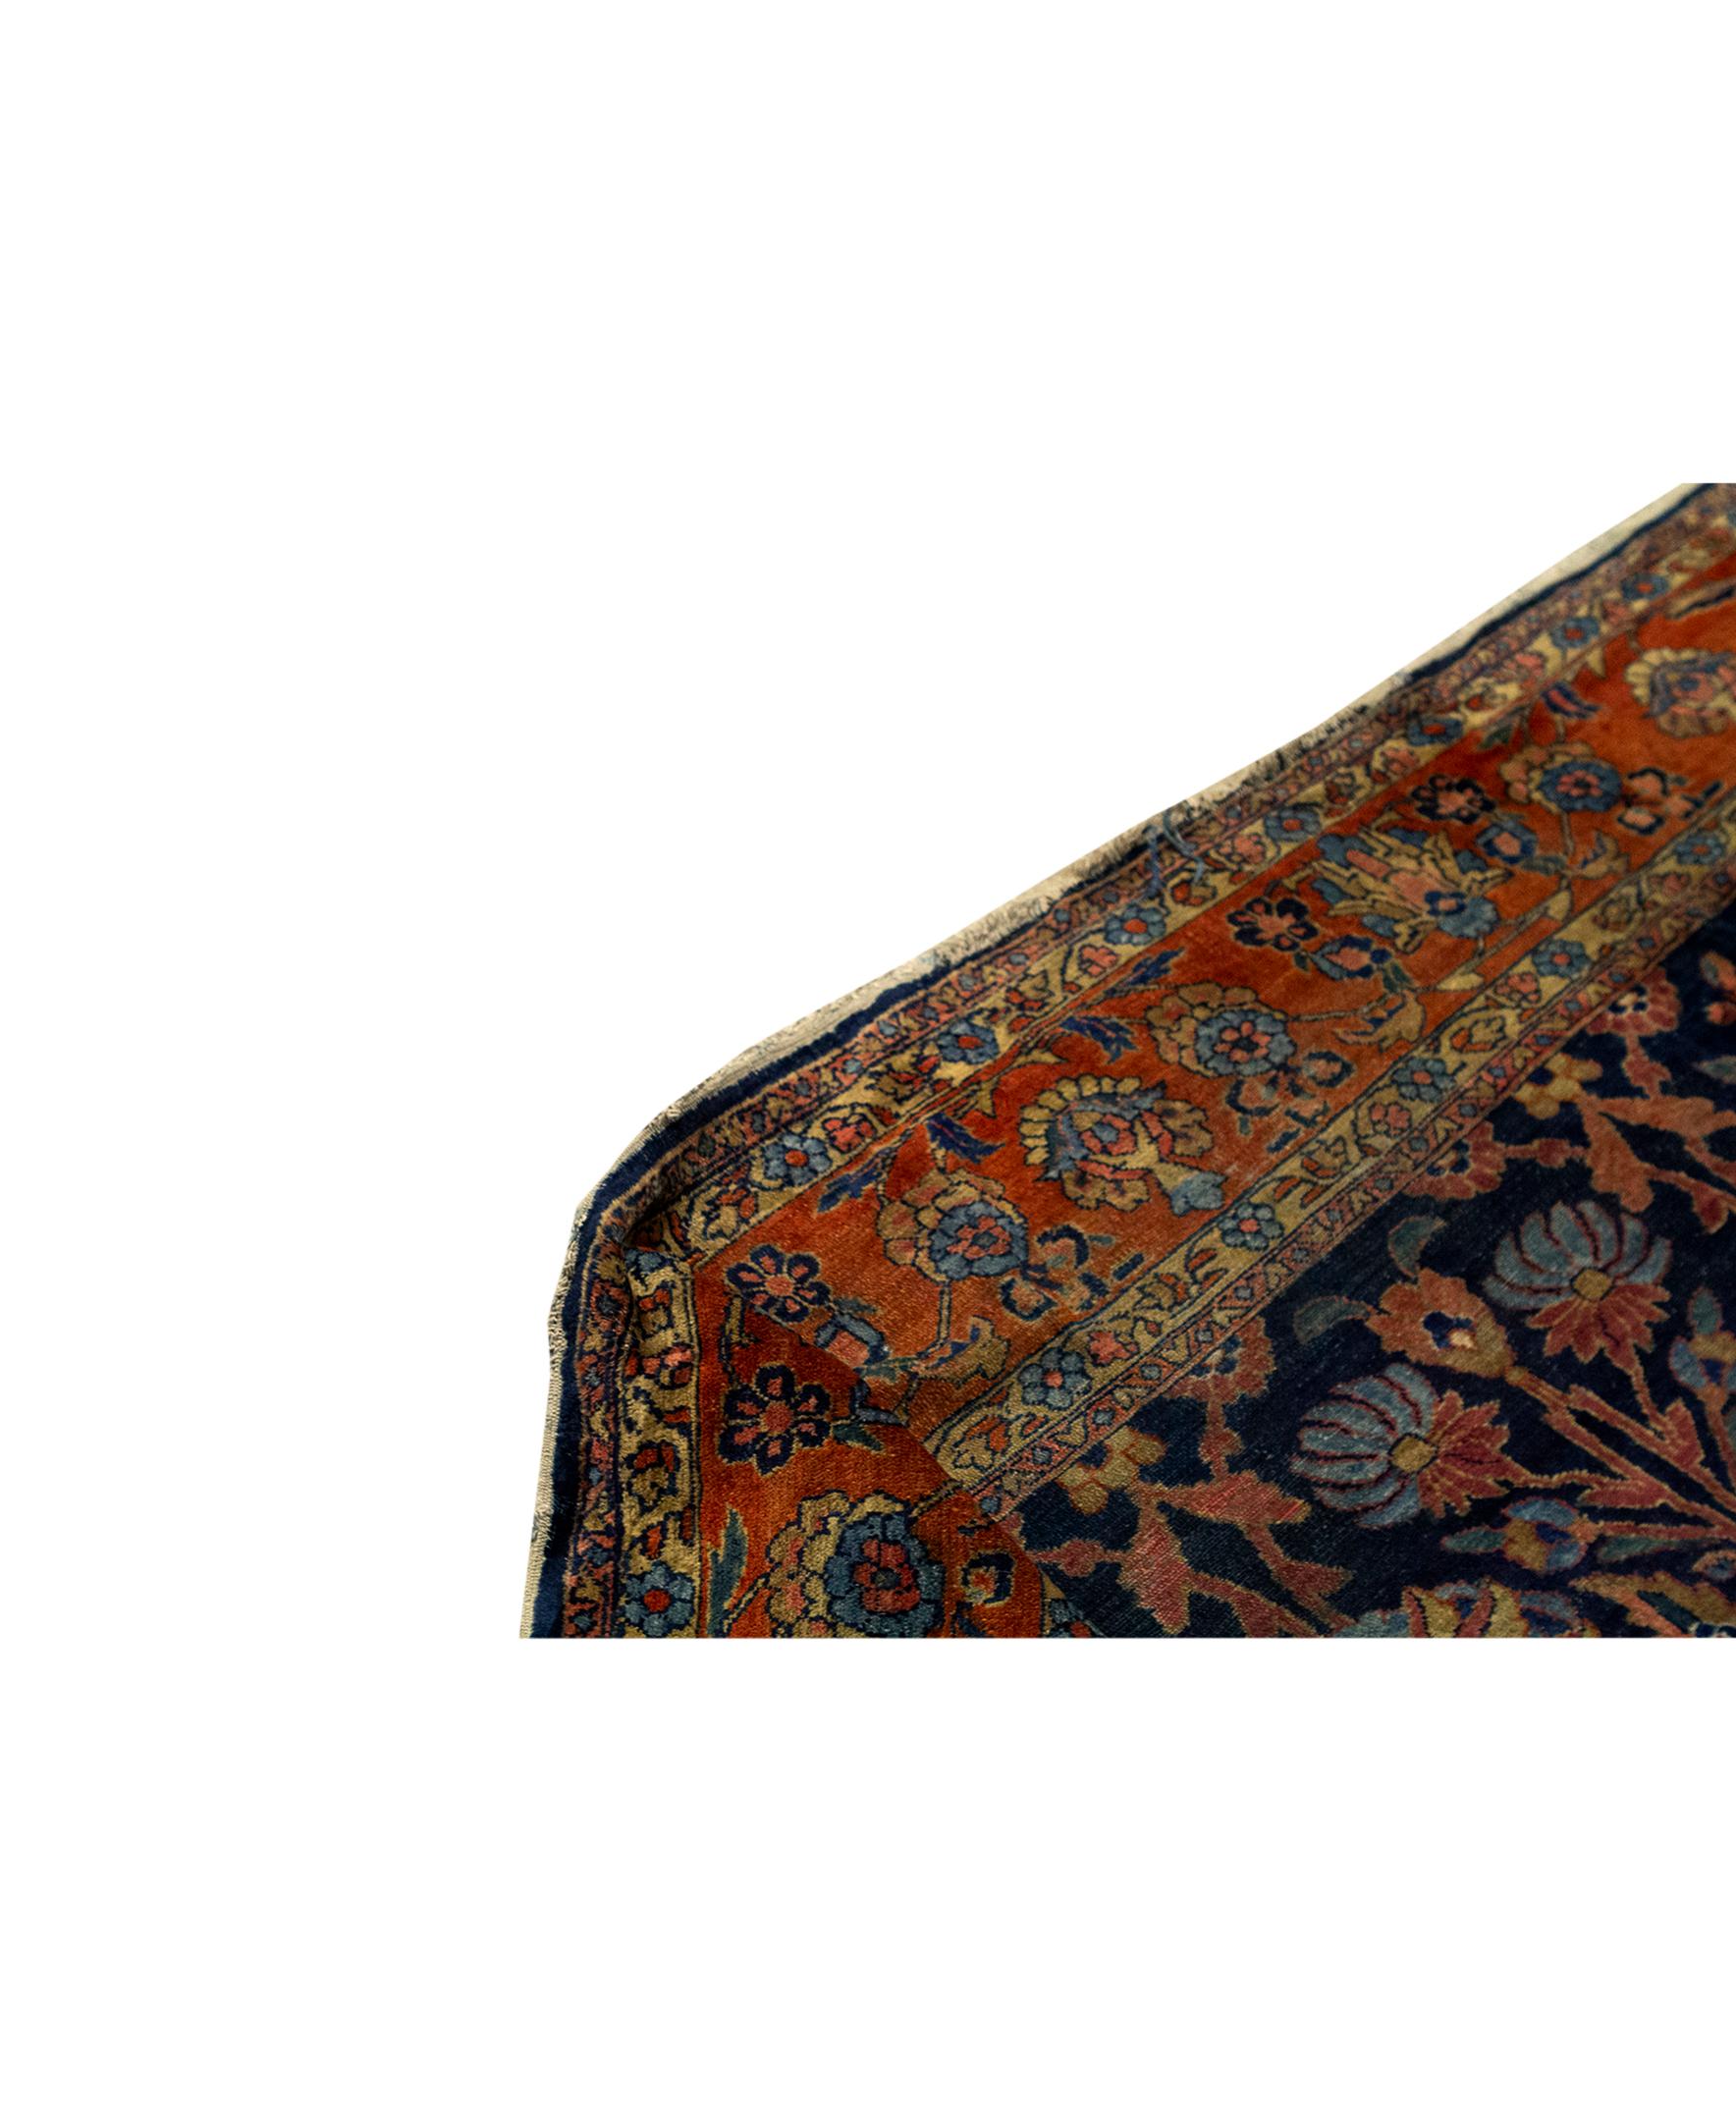   Tapis ancien persan fin traditionnel tissé à la main en laine de luxe marine/rouille. Taille : 11'-2